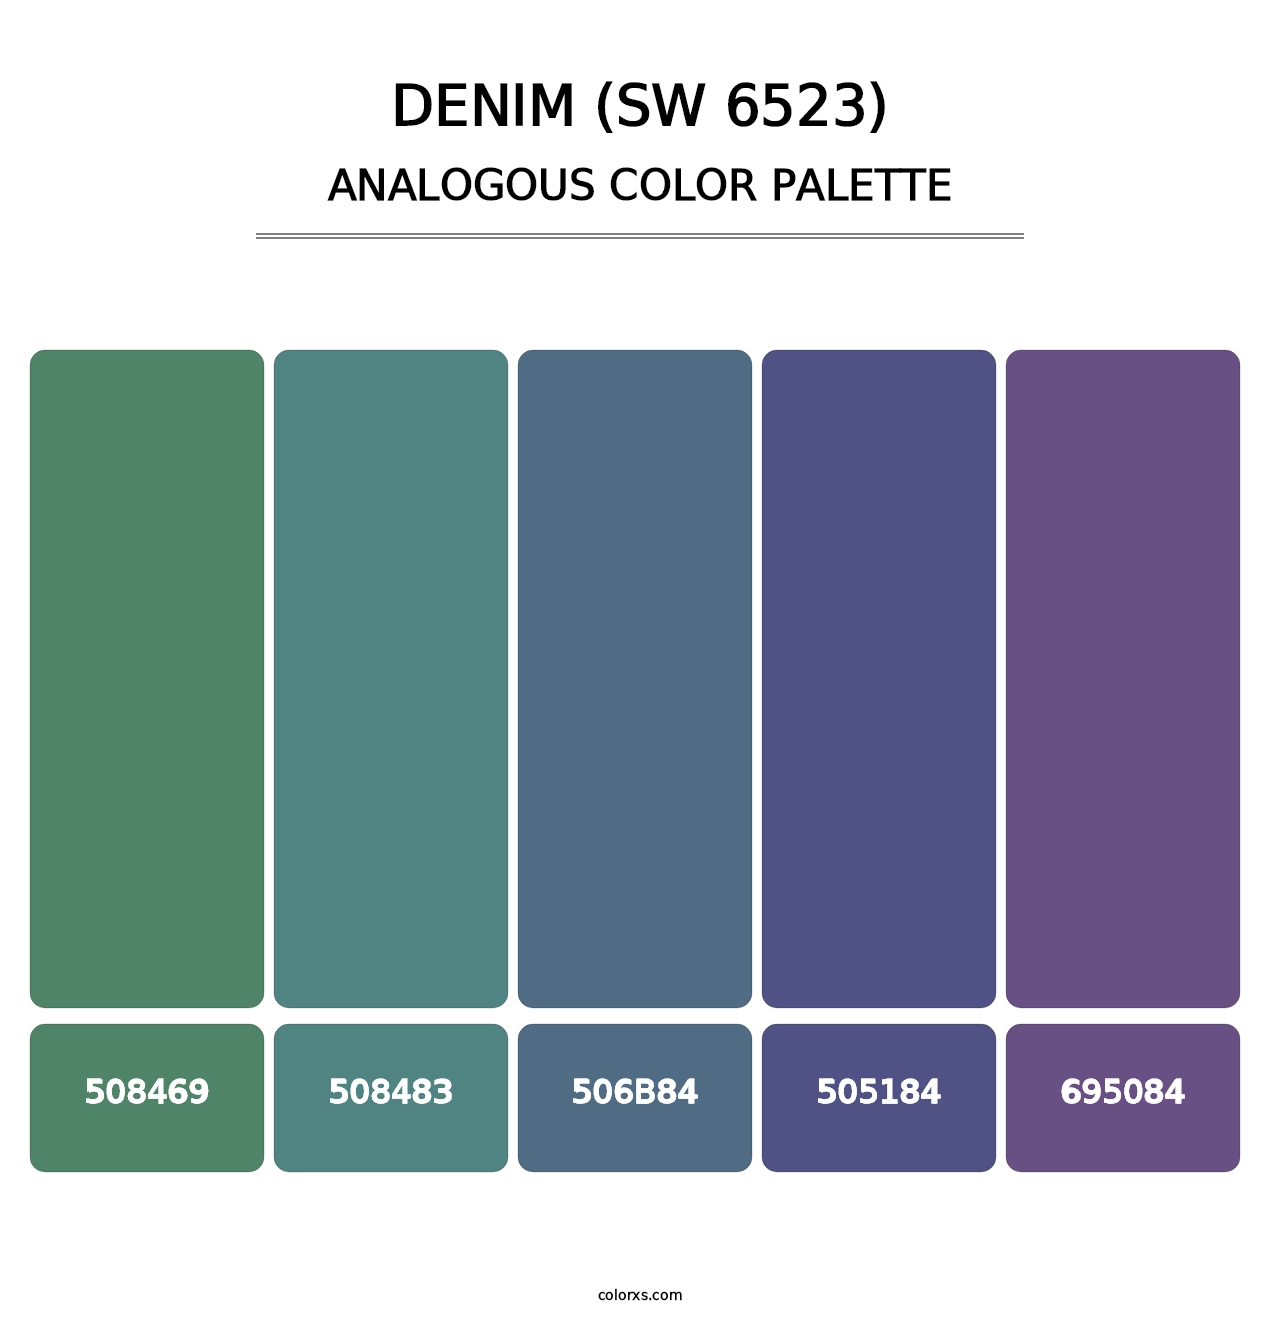 Denim (SW 6523) - Analogous Color Palette